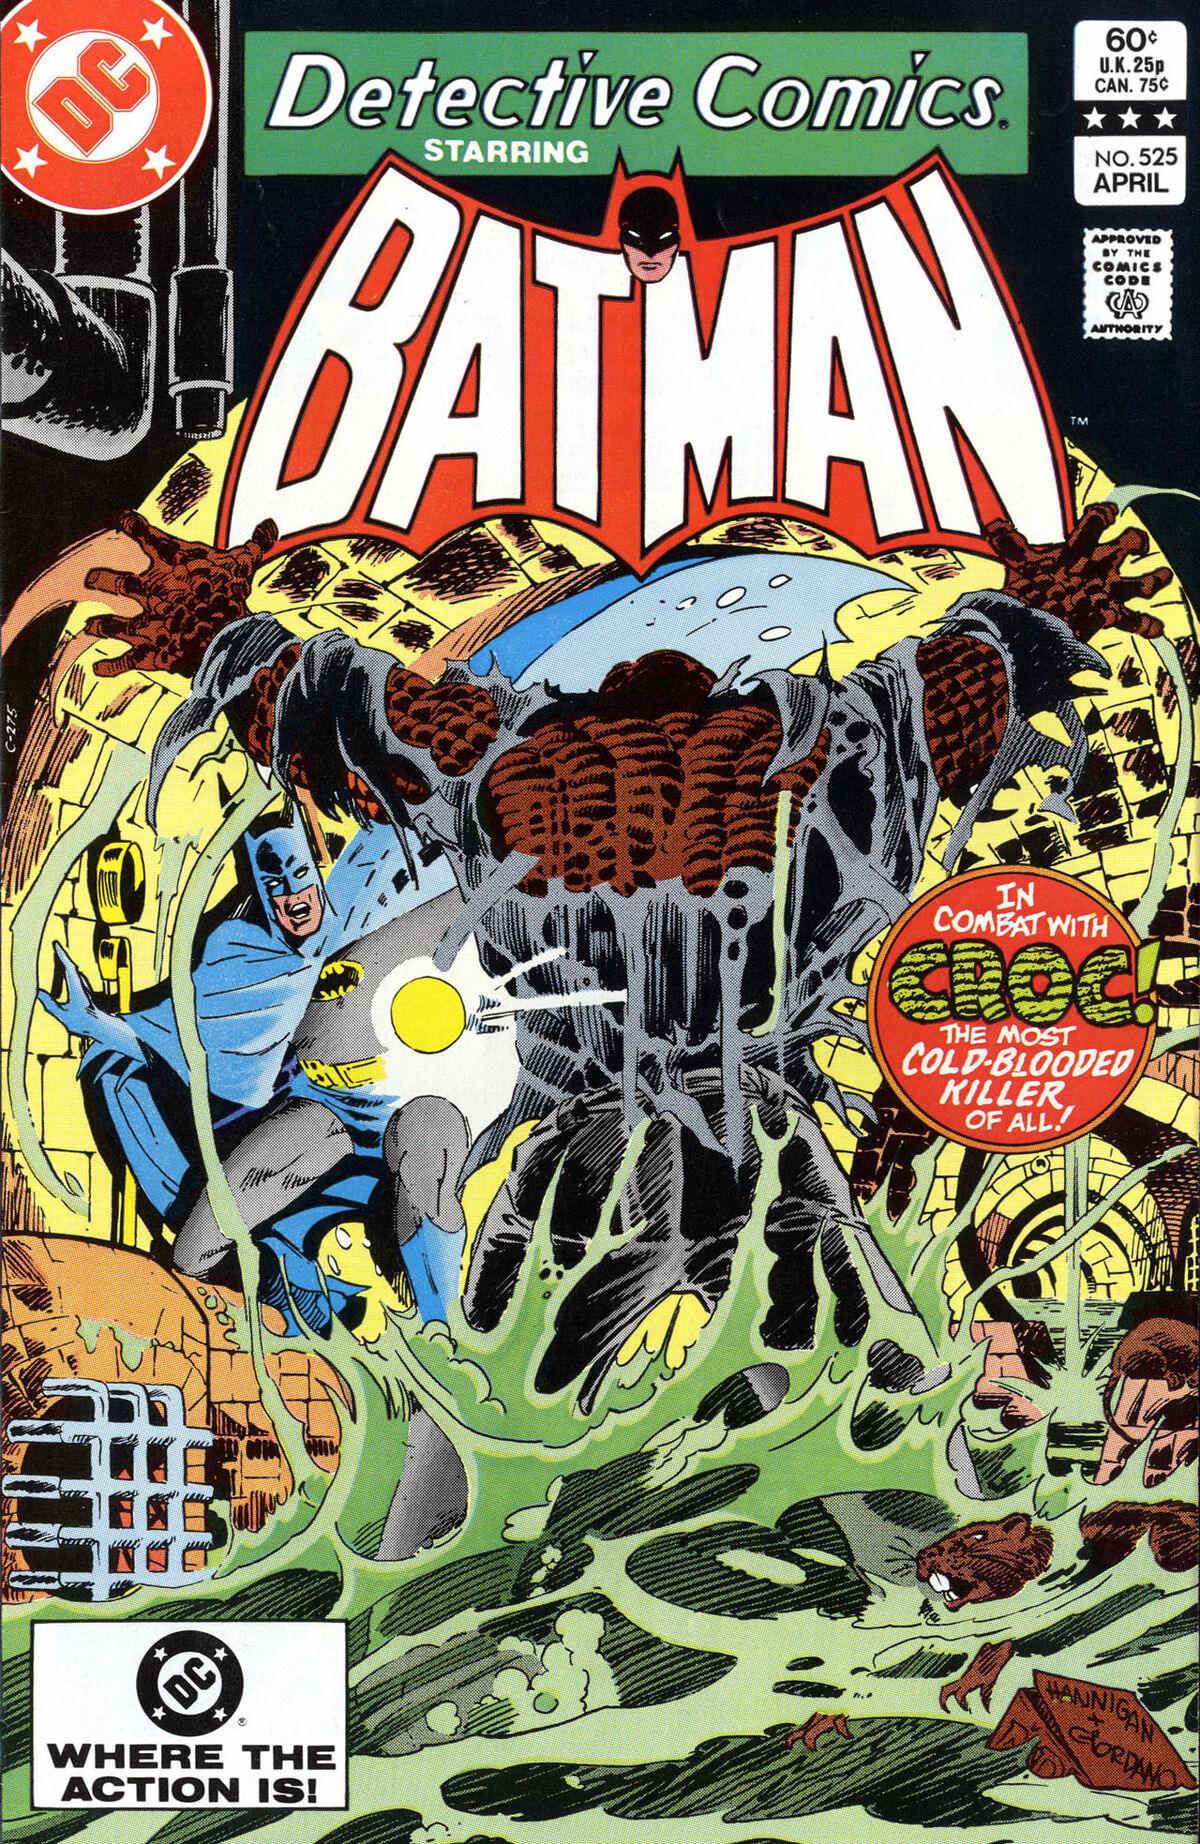 Detective Comics Vol 1 525 | DC Database | Fandom